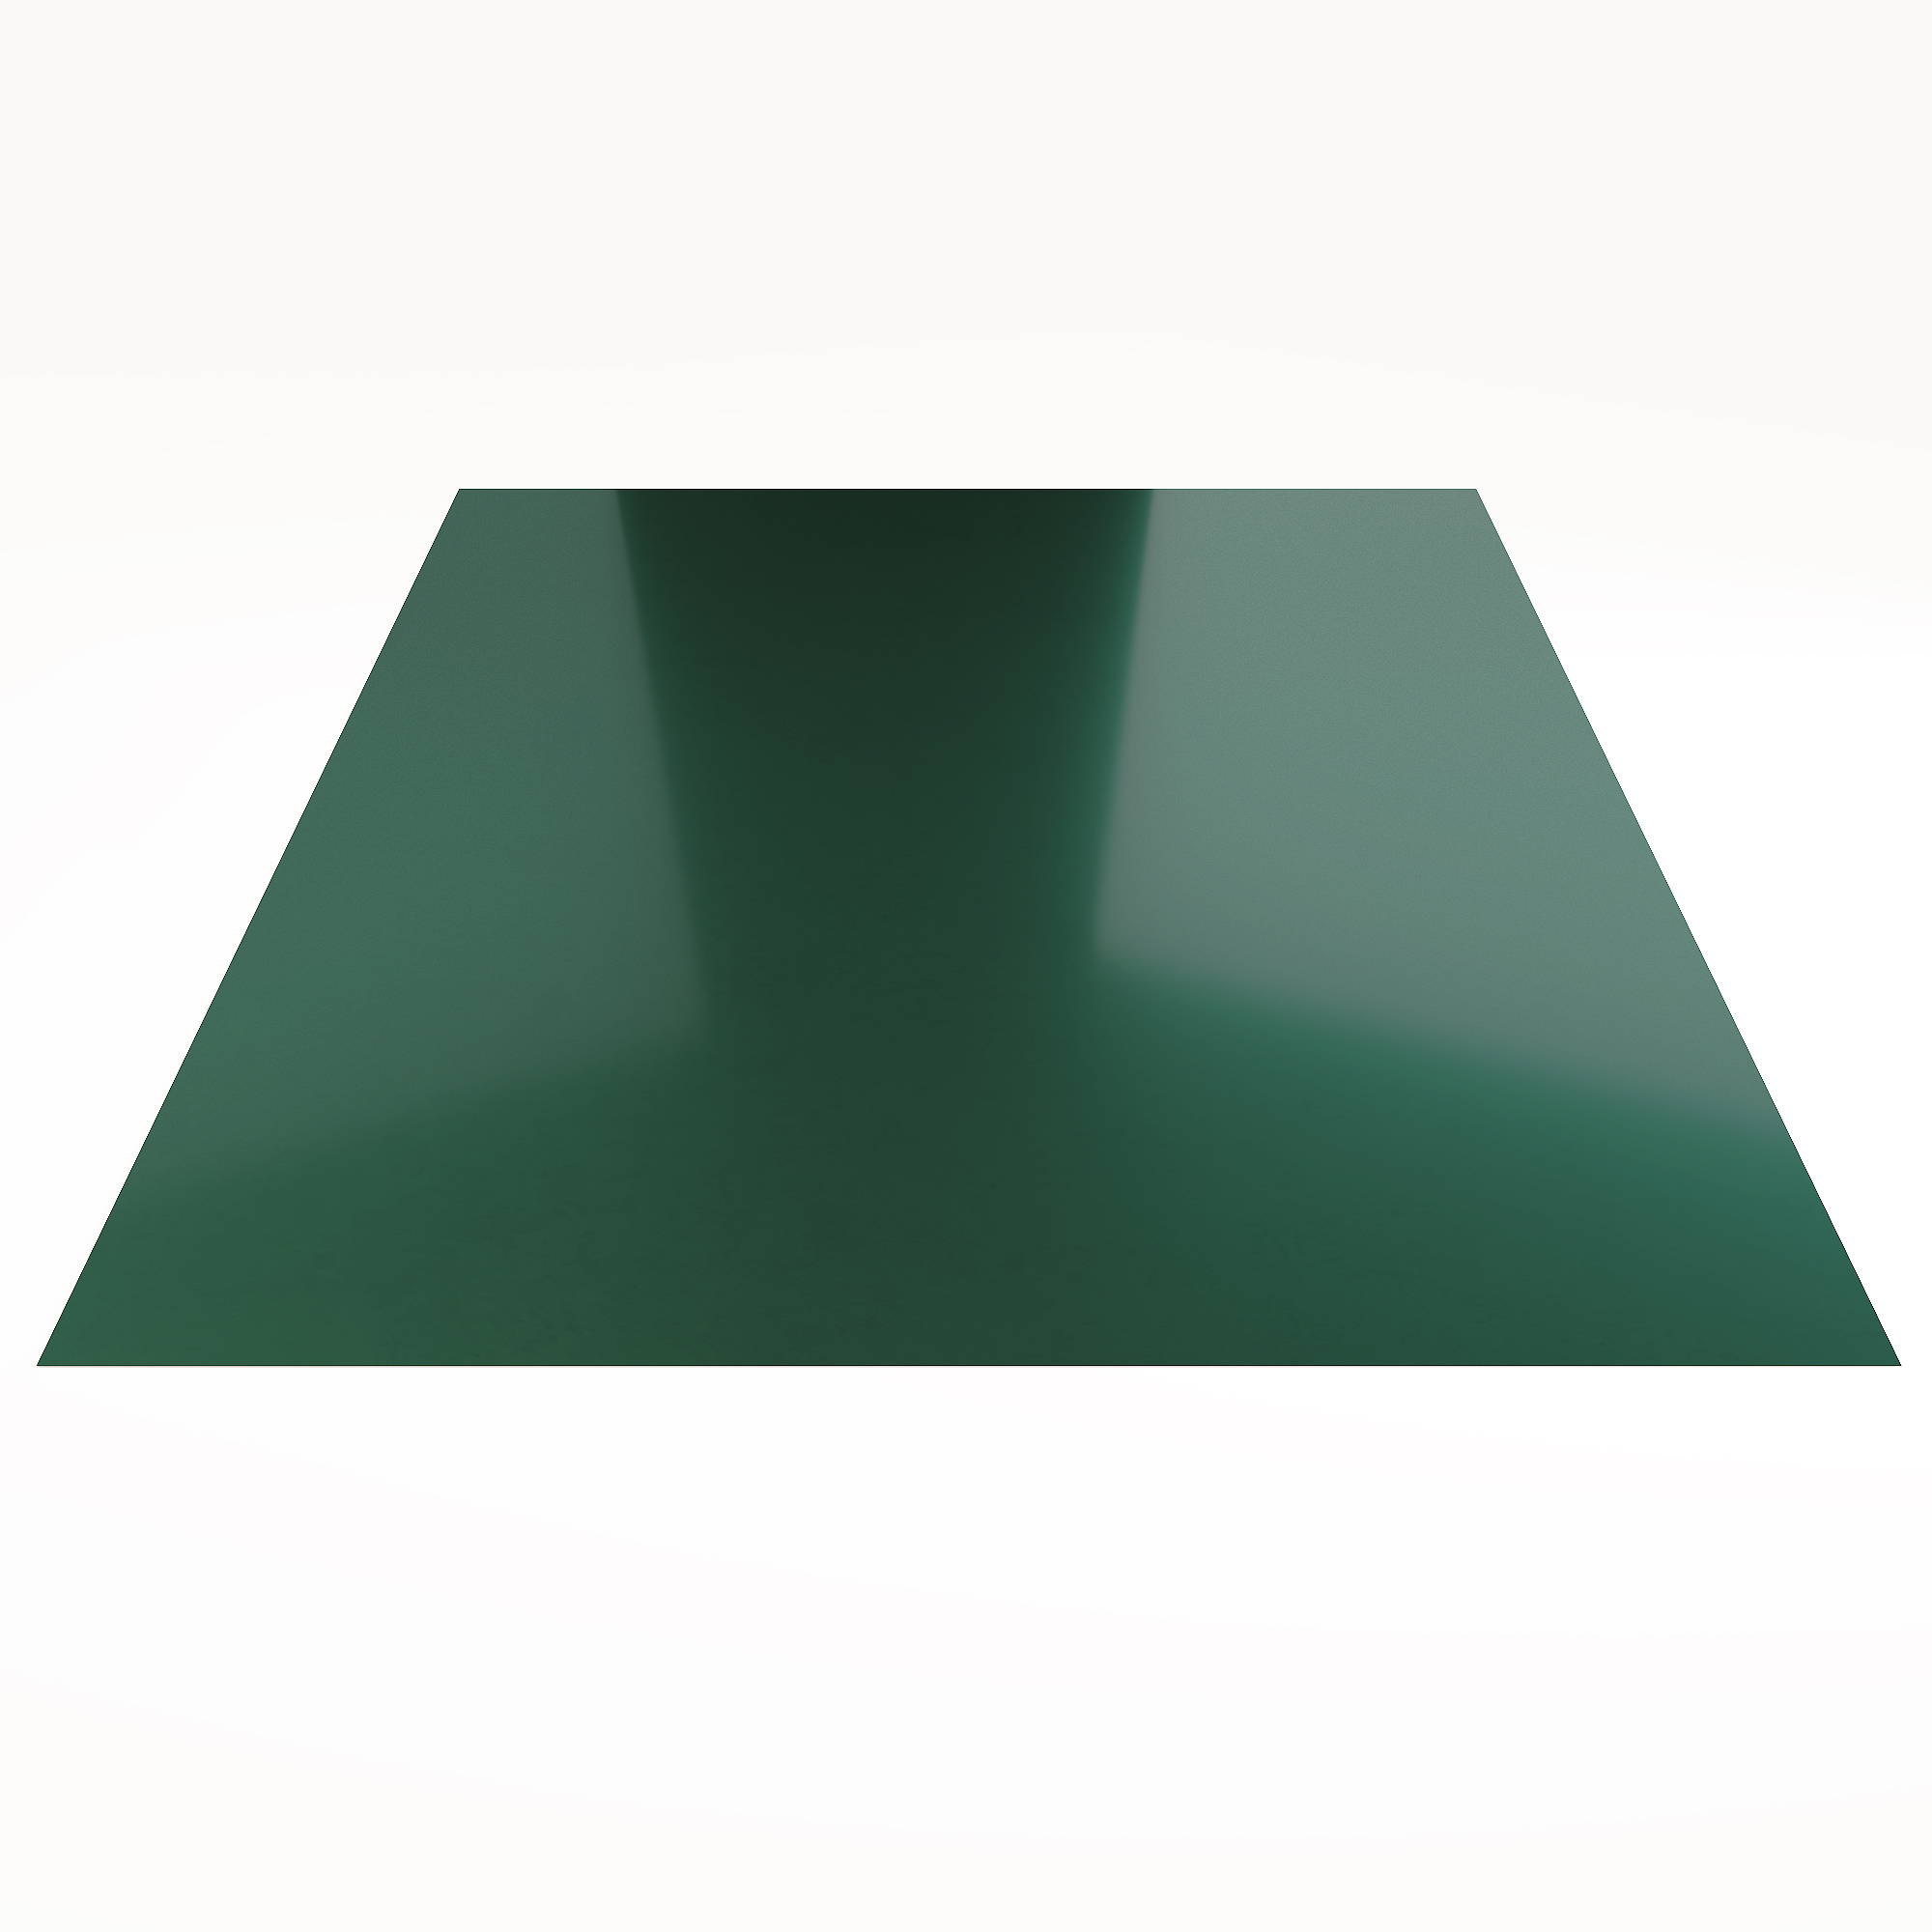 Гладкий лист Гладкий полиэстер RAL 6005 (Зелёный мох) 2500*1250*0,5 односторонний ламинированный